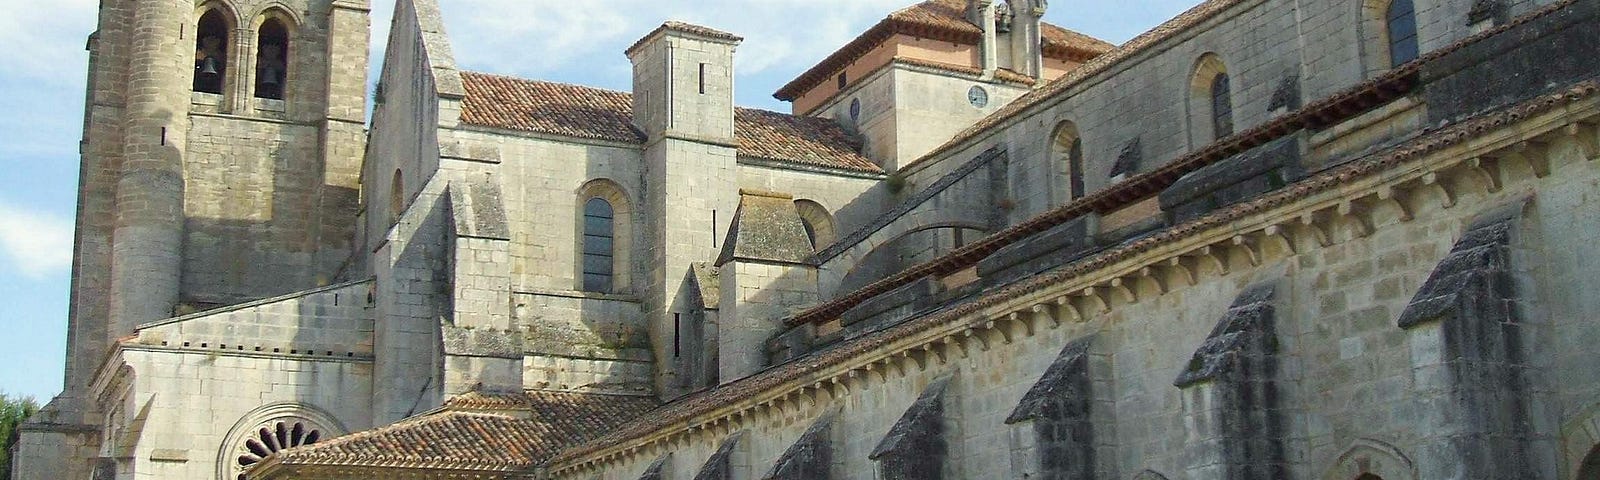 The Monastery of Santa María la Real de Las Huelgas, Burgos.